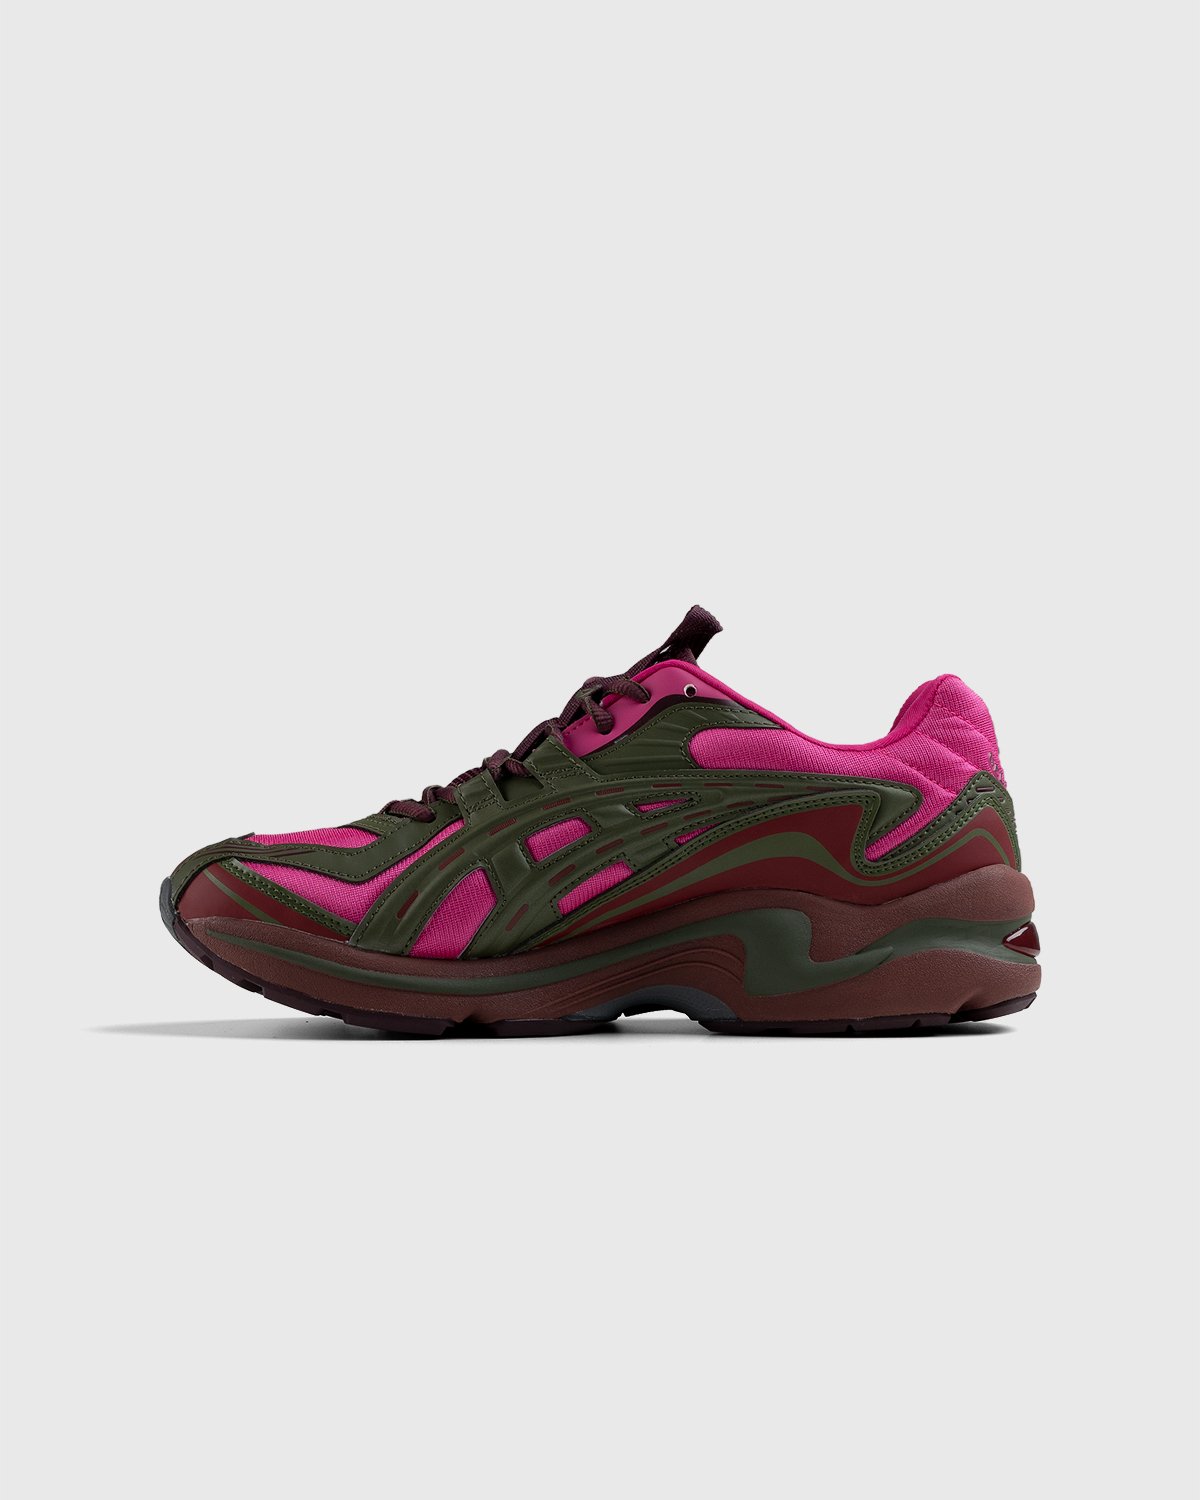 asics - FB1-S Gel-Preleus Pink Rave/Olive Canvas - Footwear - Red - Image 7